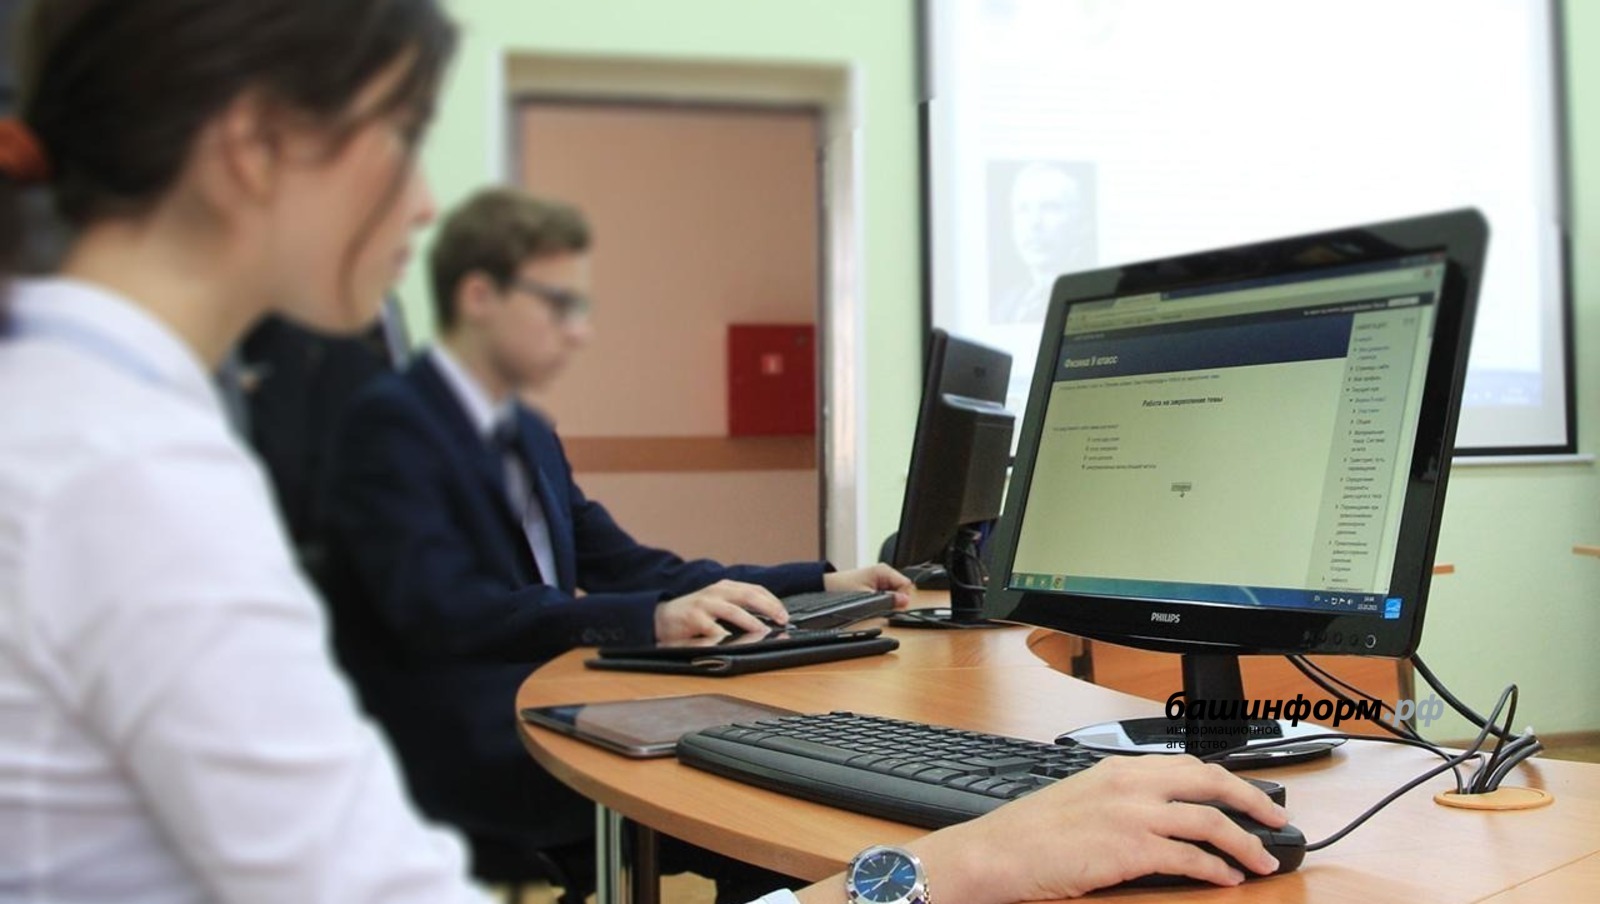 Около 400 жителей Башкирии получили новые профессии благодаря образовательным сертификатам